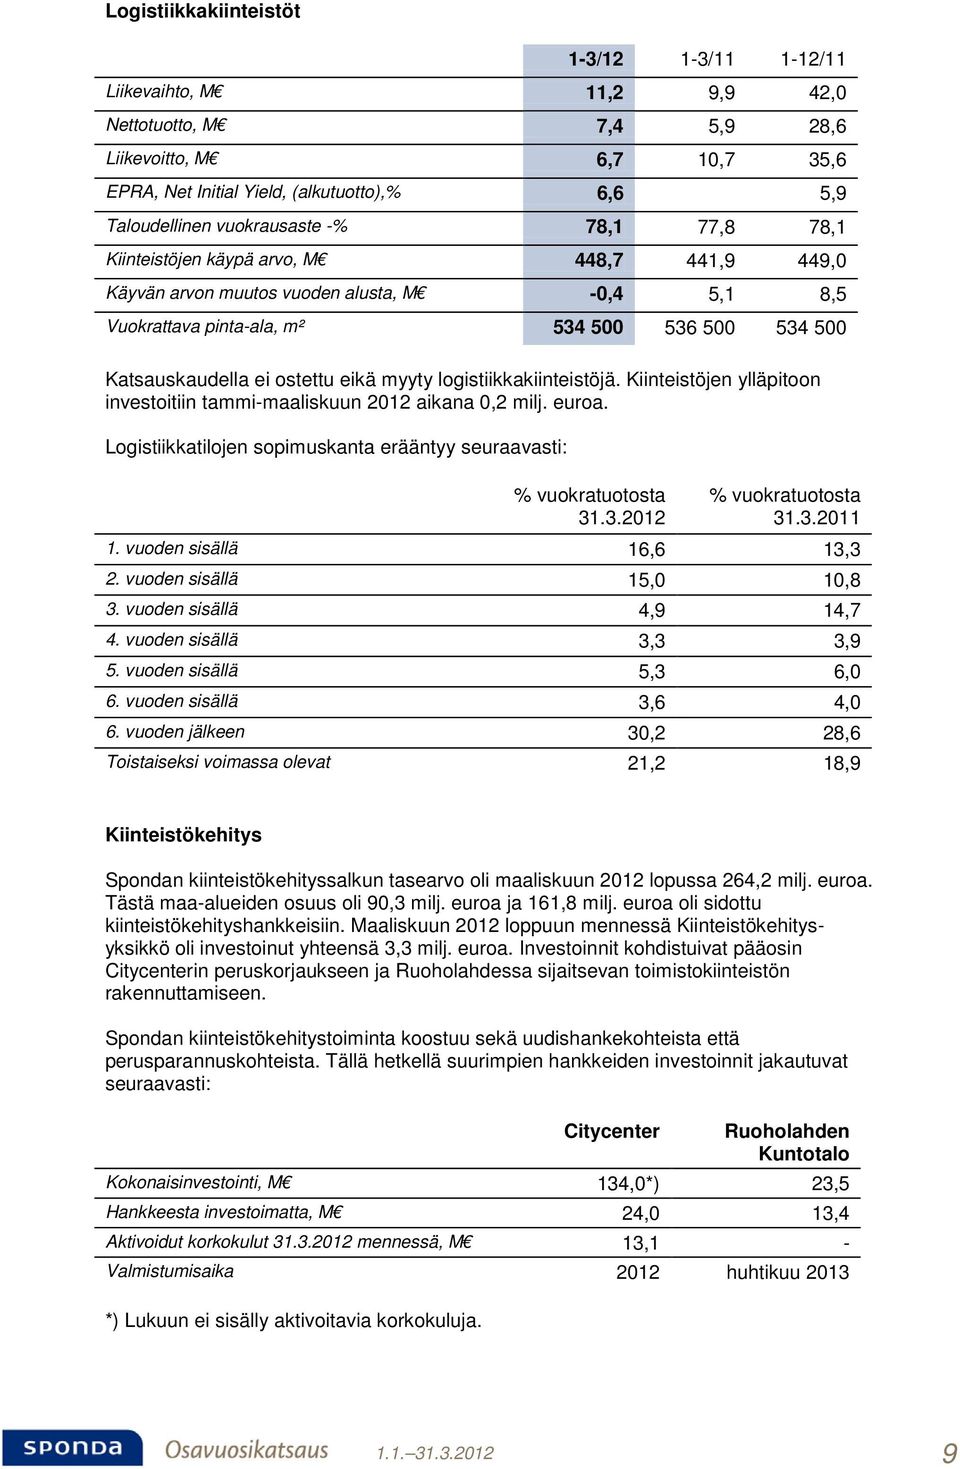 ostettu eikä myyty logistiikkakiinteistöjä. Kiinteistöjen ylläpitoon investoitiin tammi-maaliskuun 2012 aikana 0,2 milj. euroa.